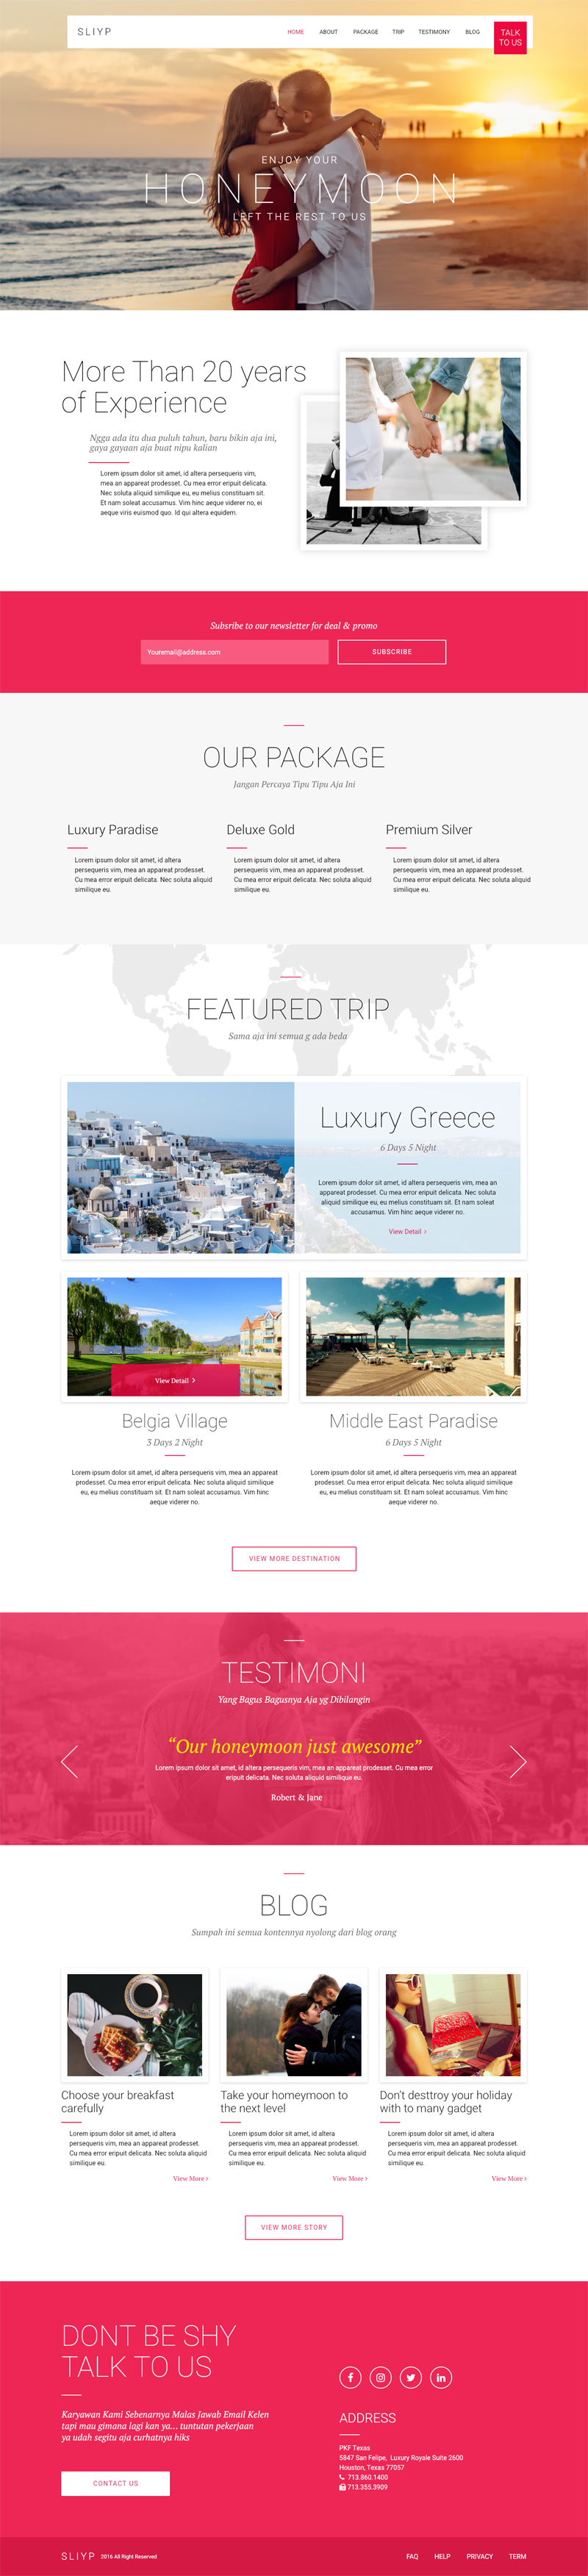 Página de destino de la Agencia de Viajes Sliyp hecha con Adobe XD